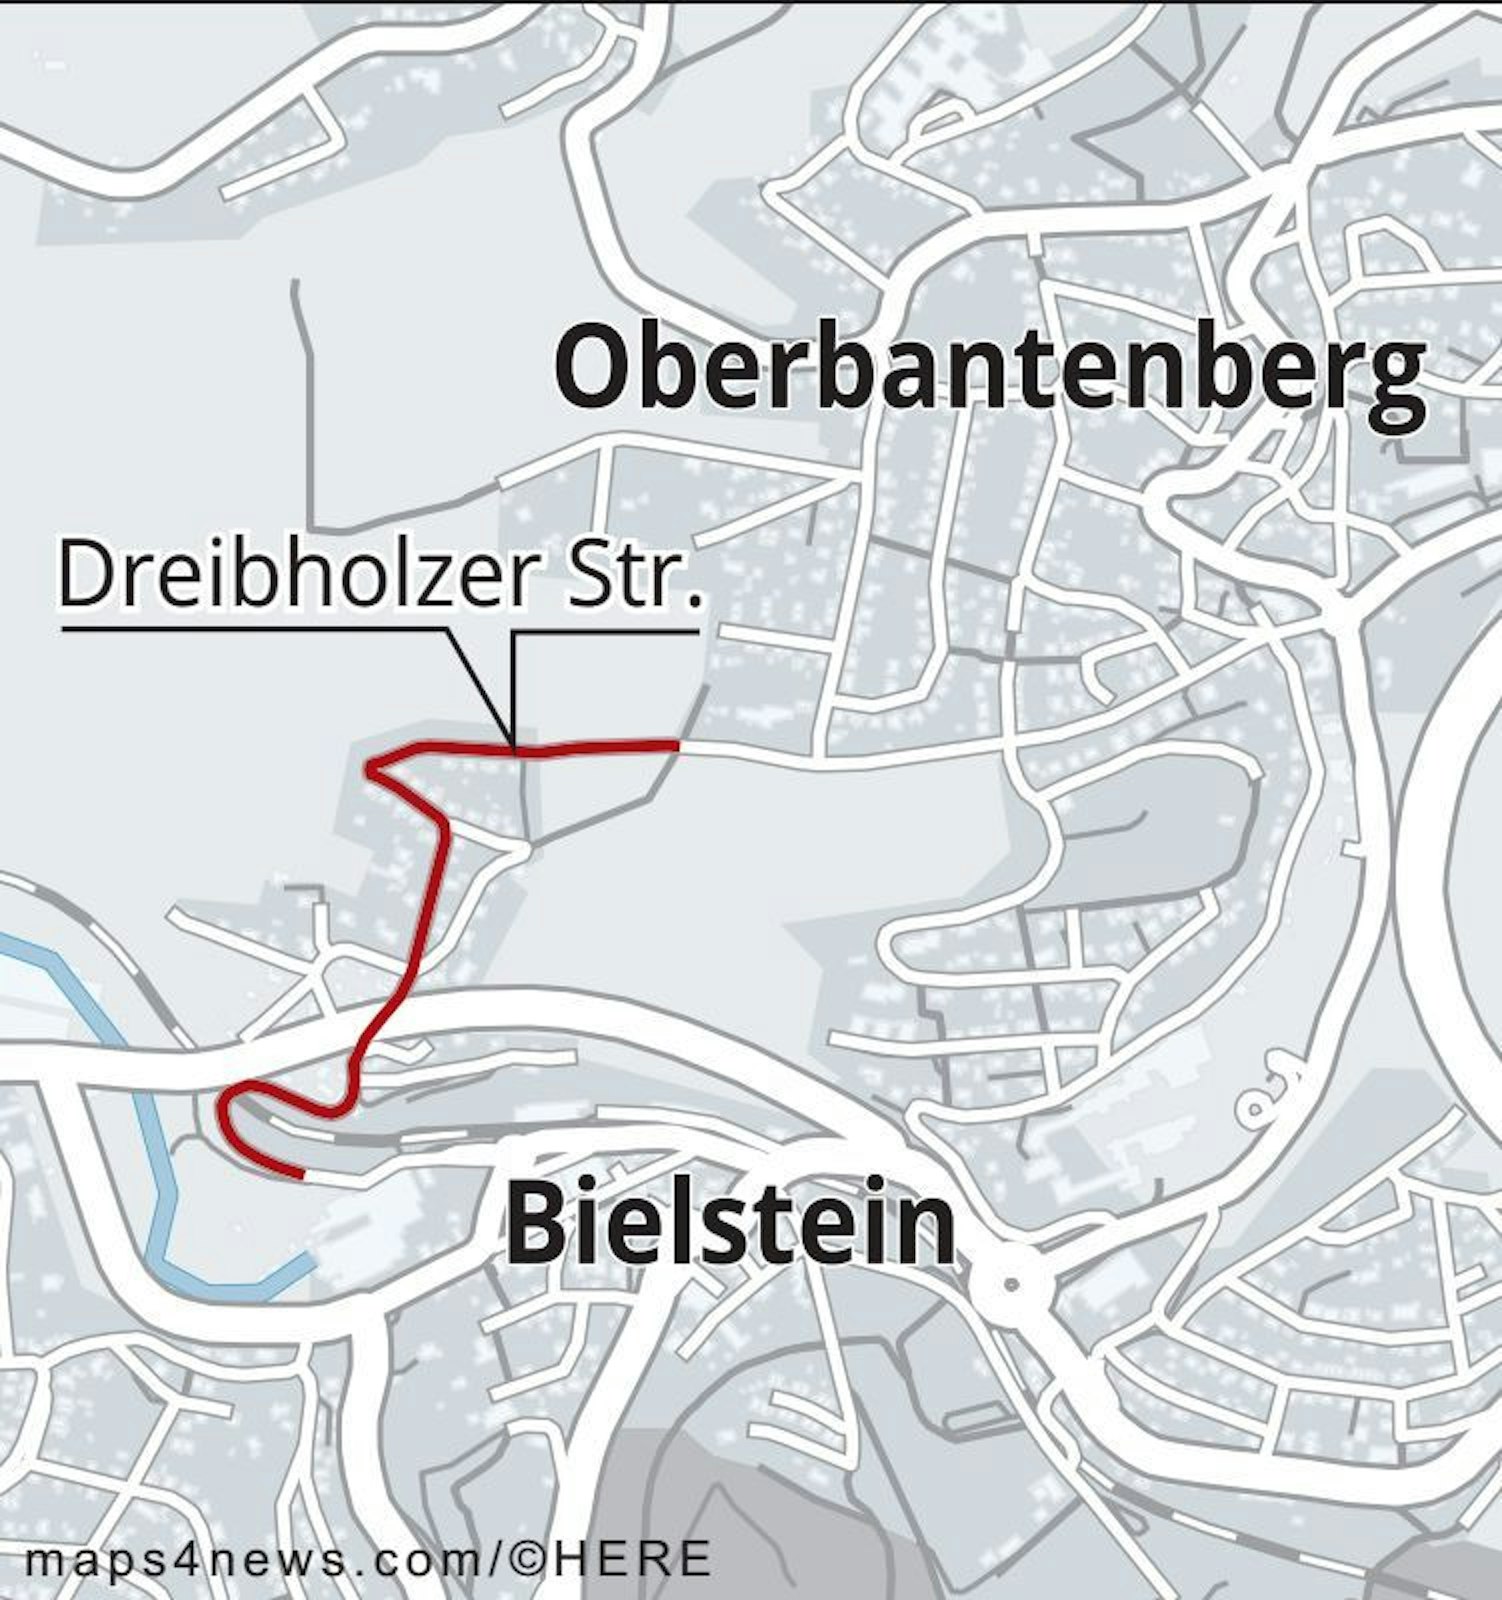 Die Deibholzer Straße liegt zwischen Oberbantenberg und Bielstein.